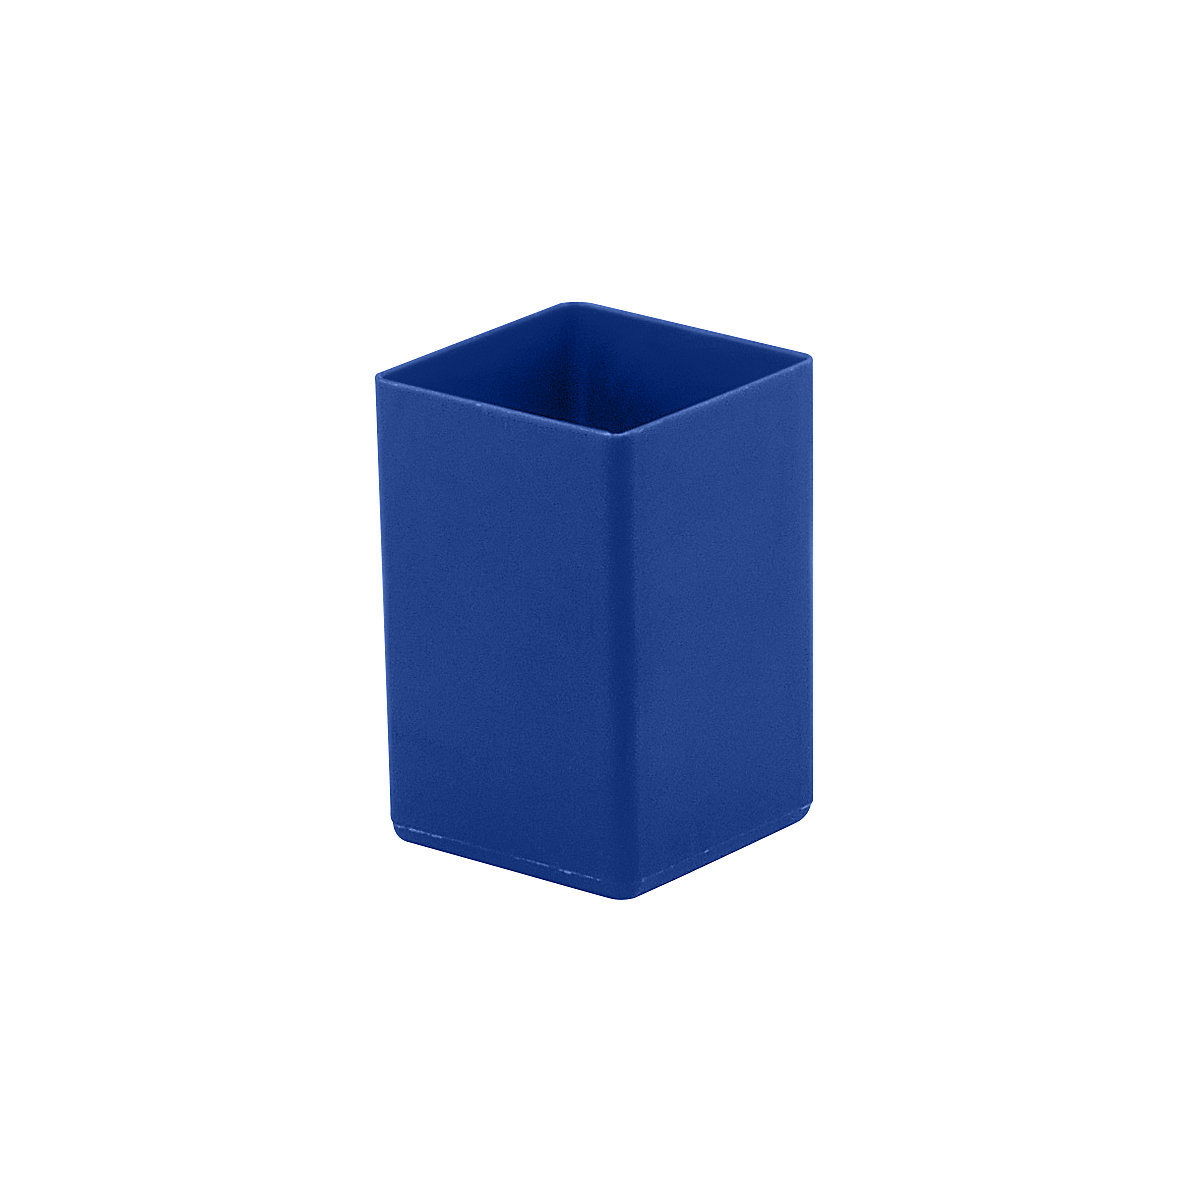 Caixa inserível, altura 70 mm, azul, CxL 49x49 mm, embalagem com 50 unidades-10